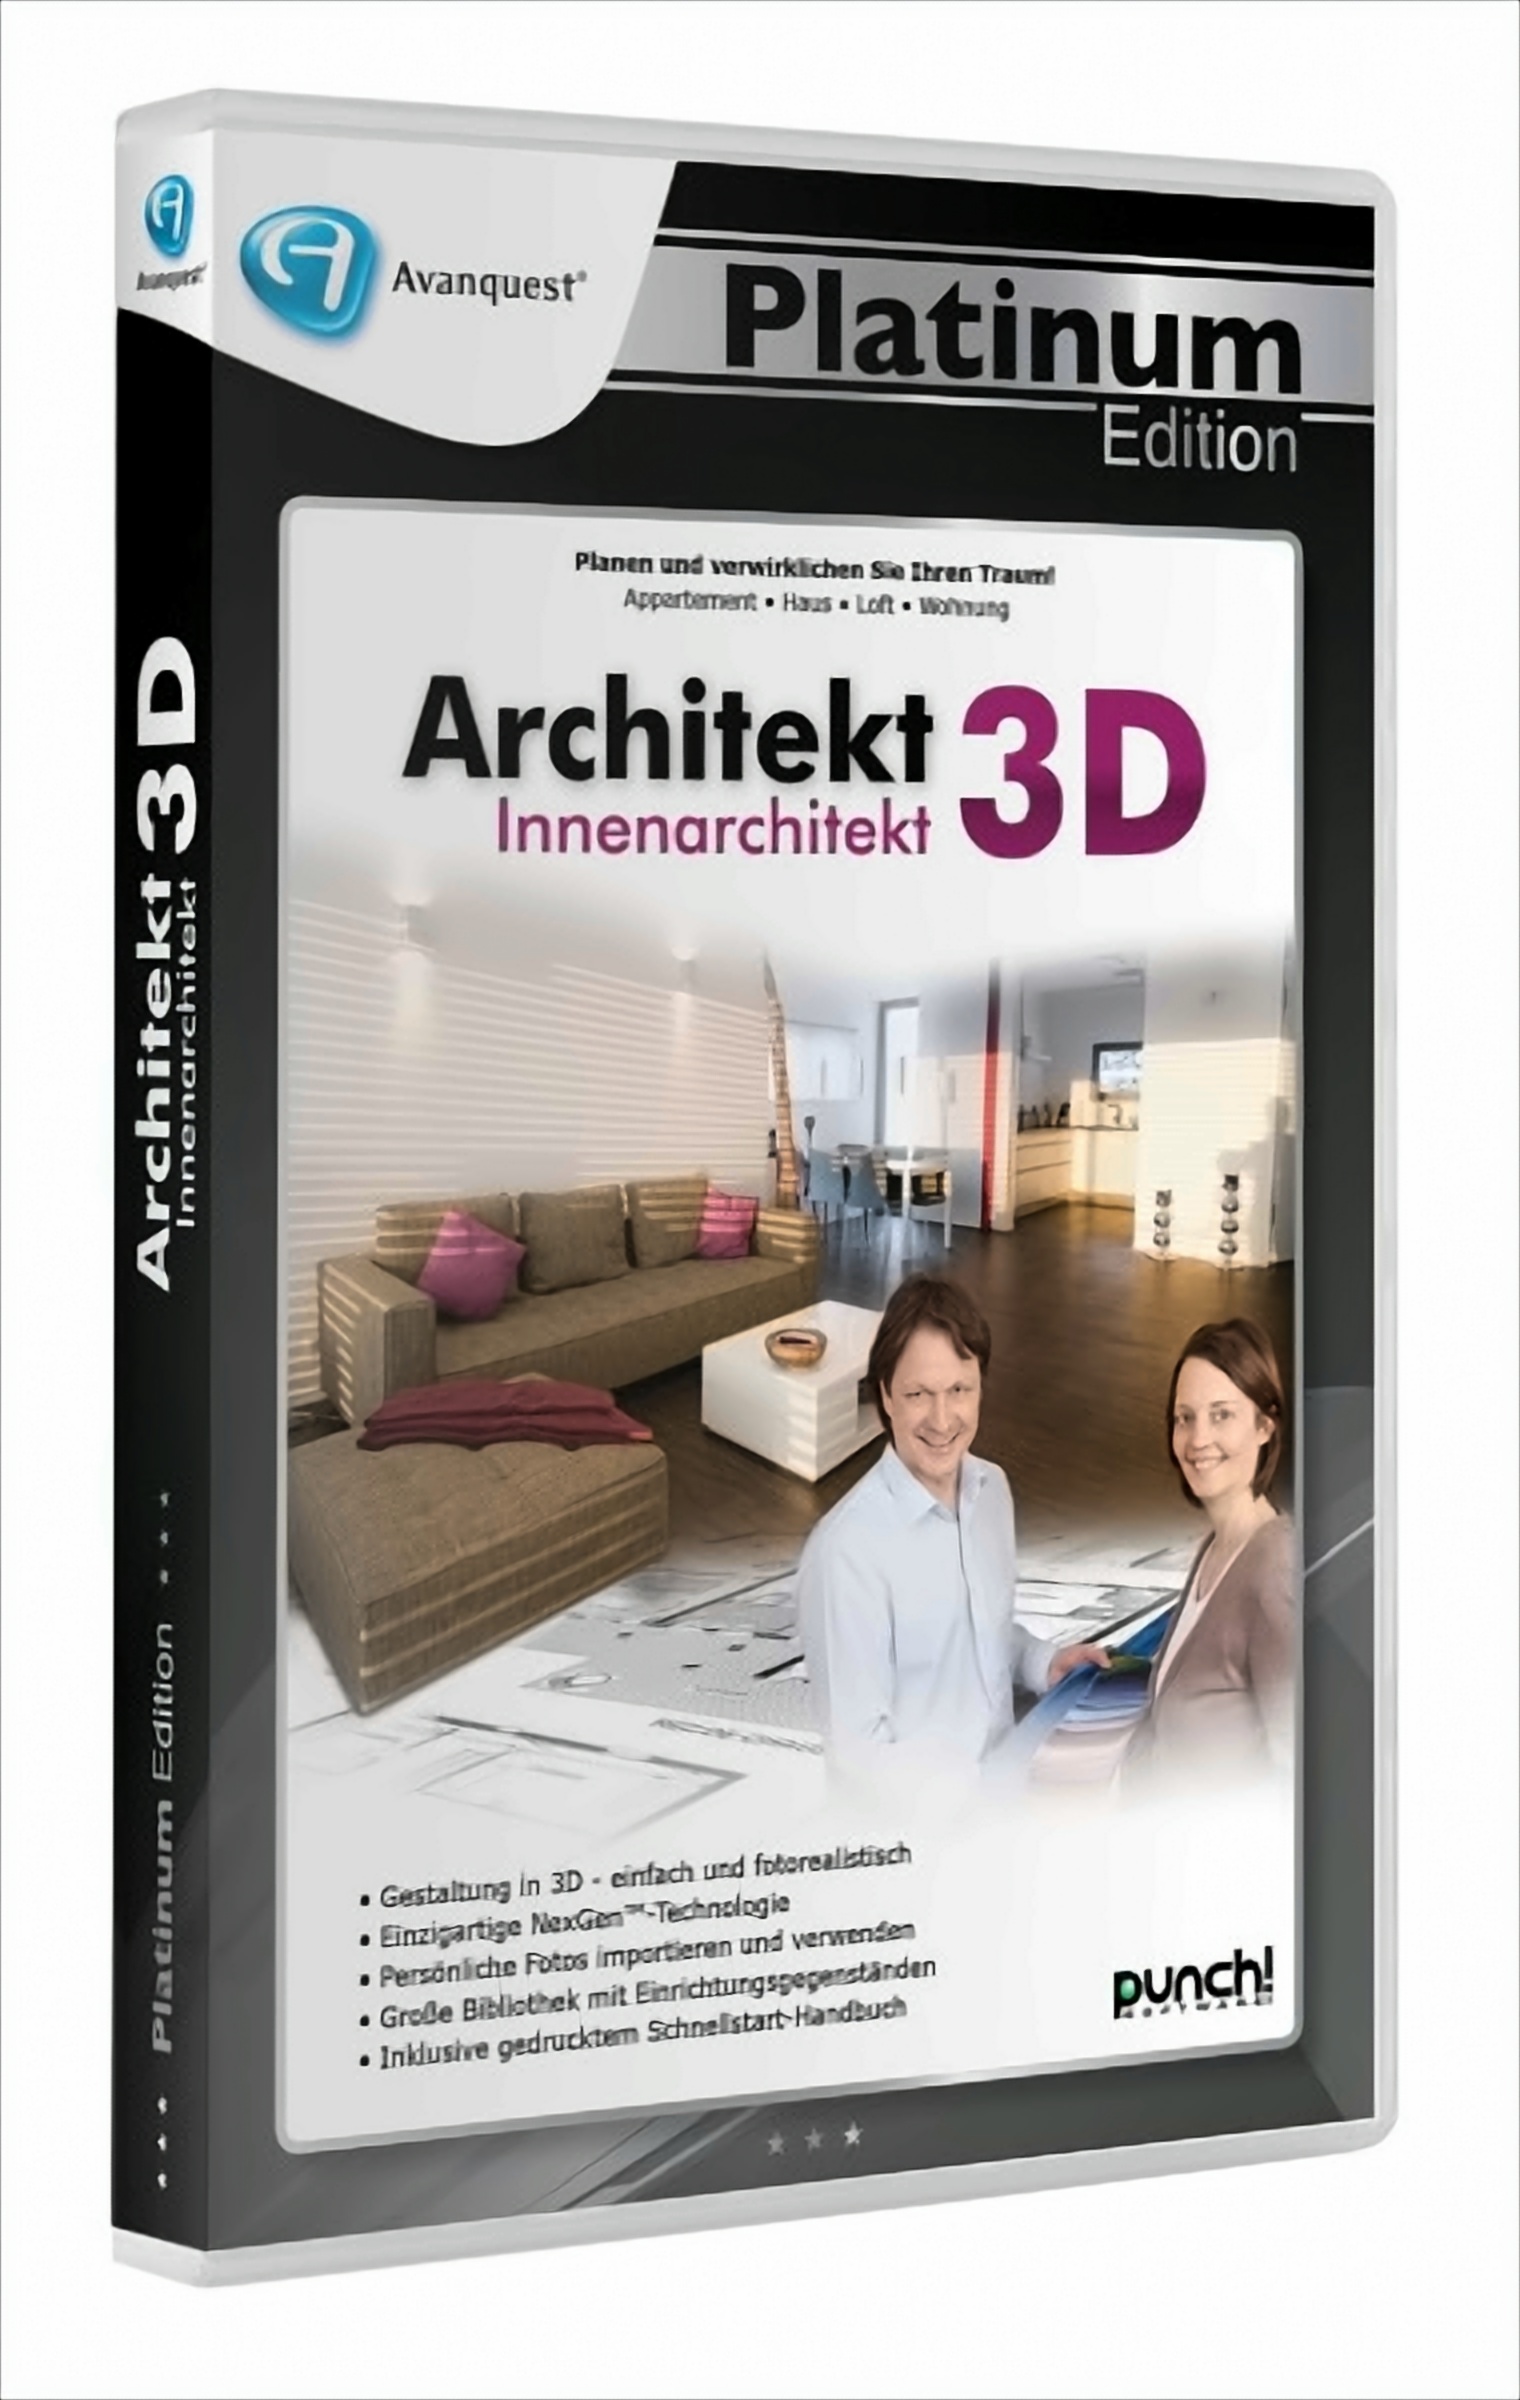 APE - Architekt 3D Innenarchitekt